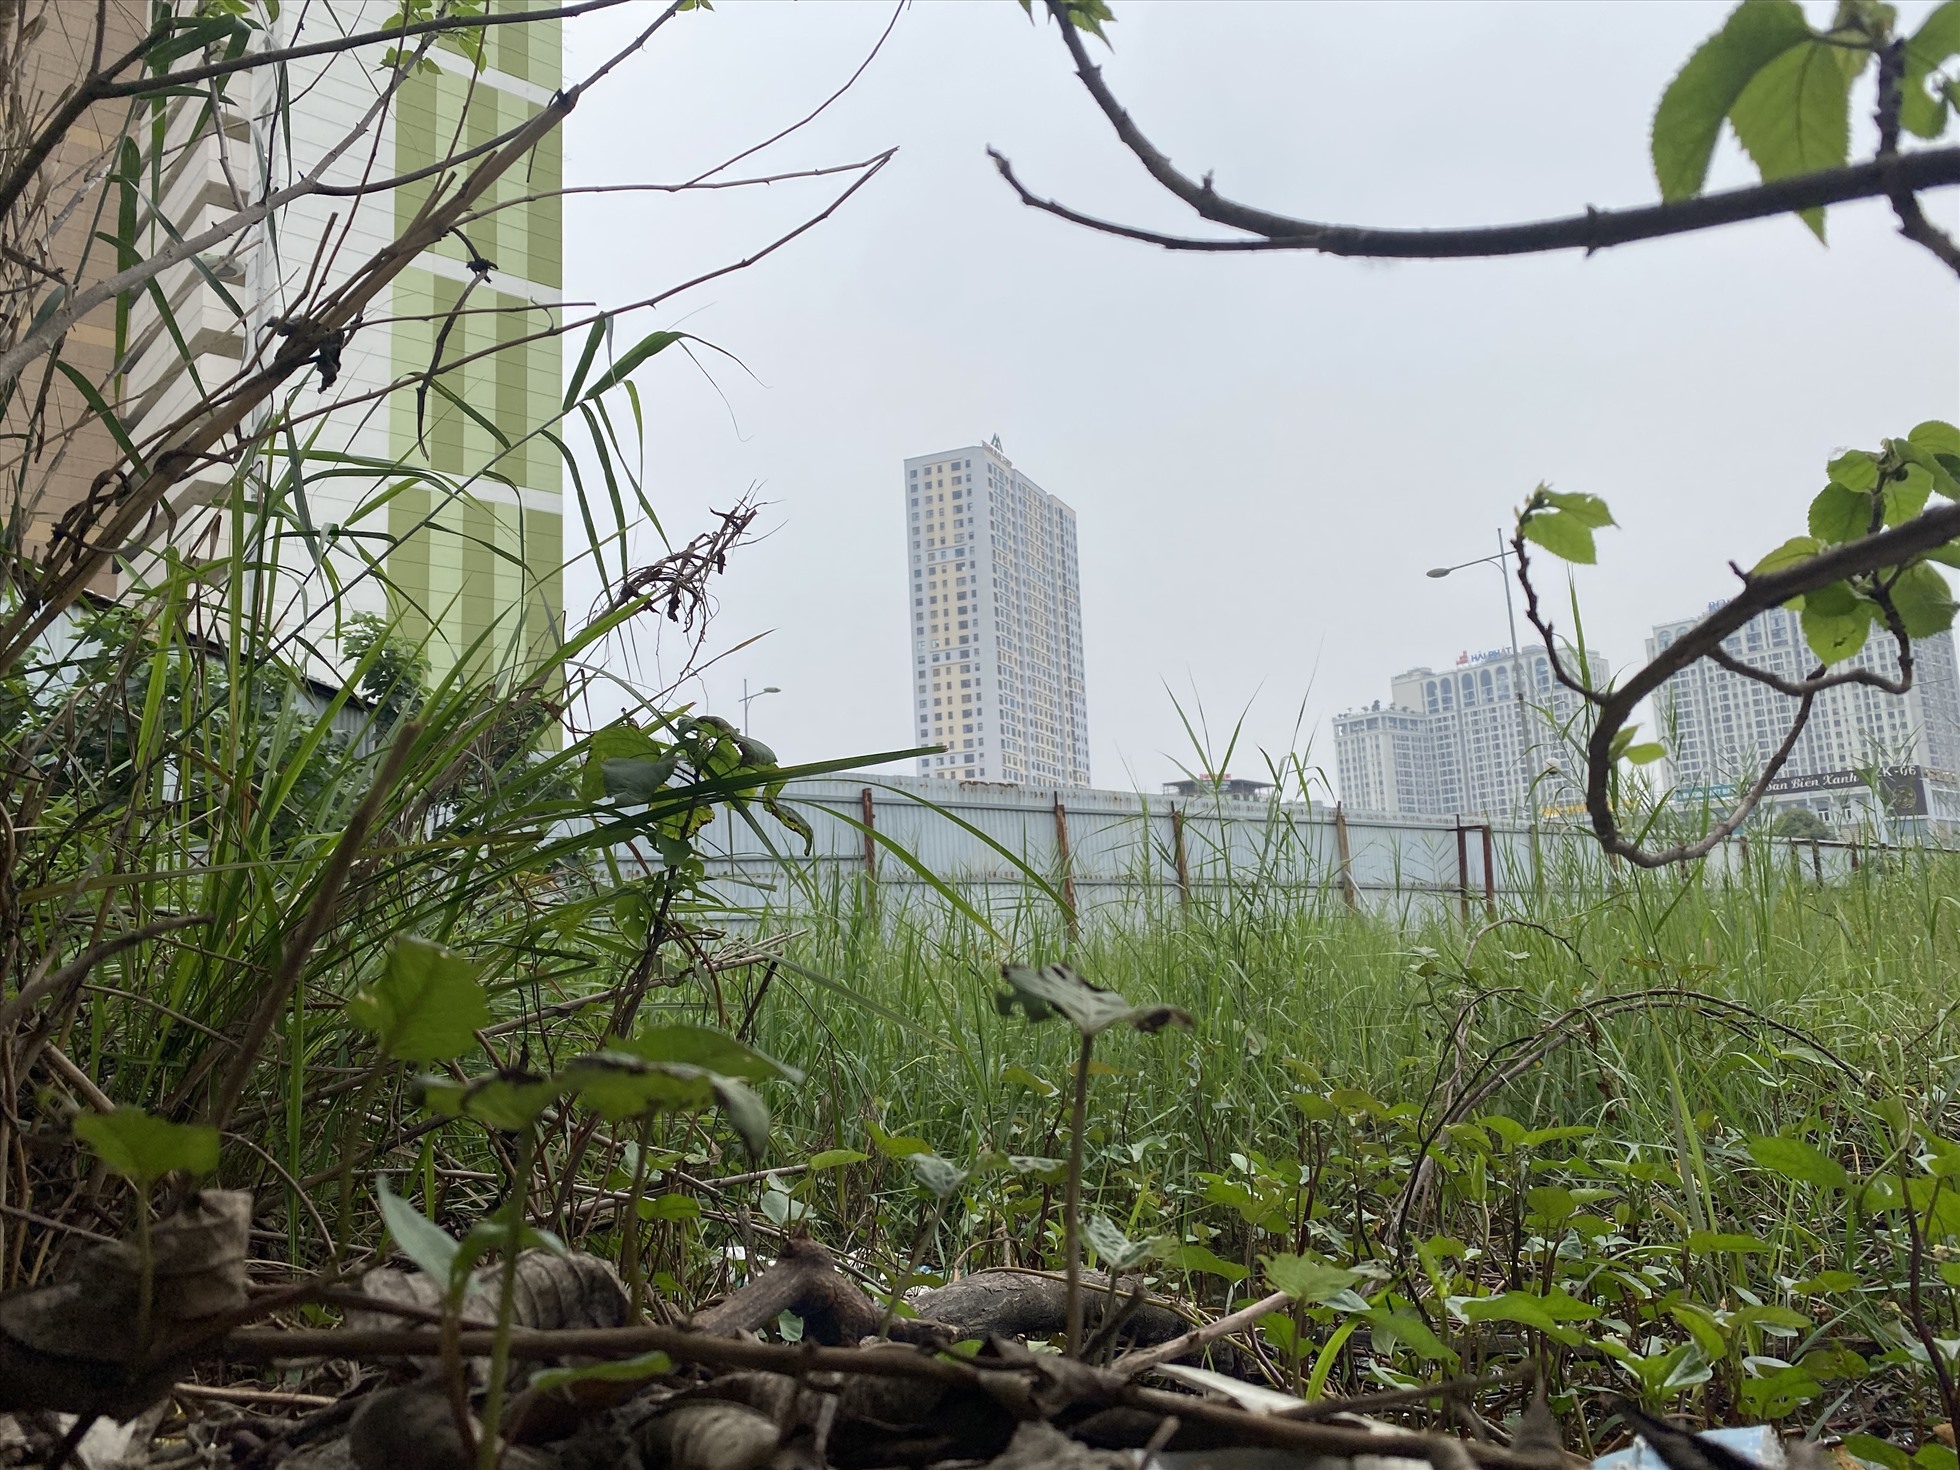 4 ô đất còn lại của dự án Booyoung Vina vẫn đang quây tôn, bỏ hoang. Ảnh: Vĩnh Hoàng